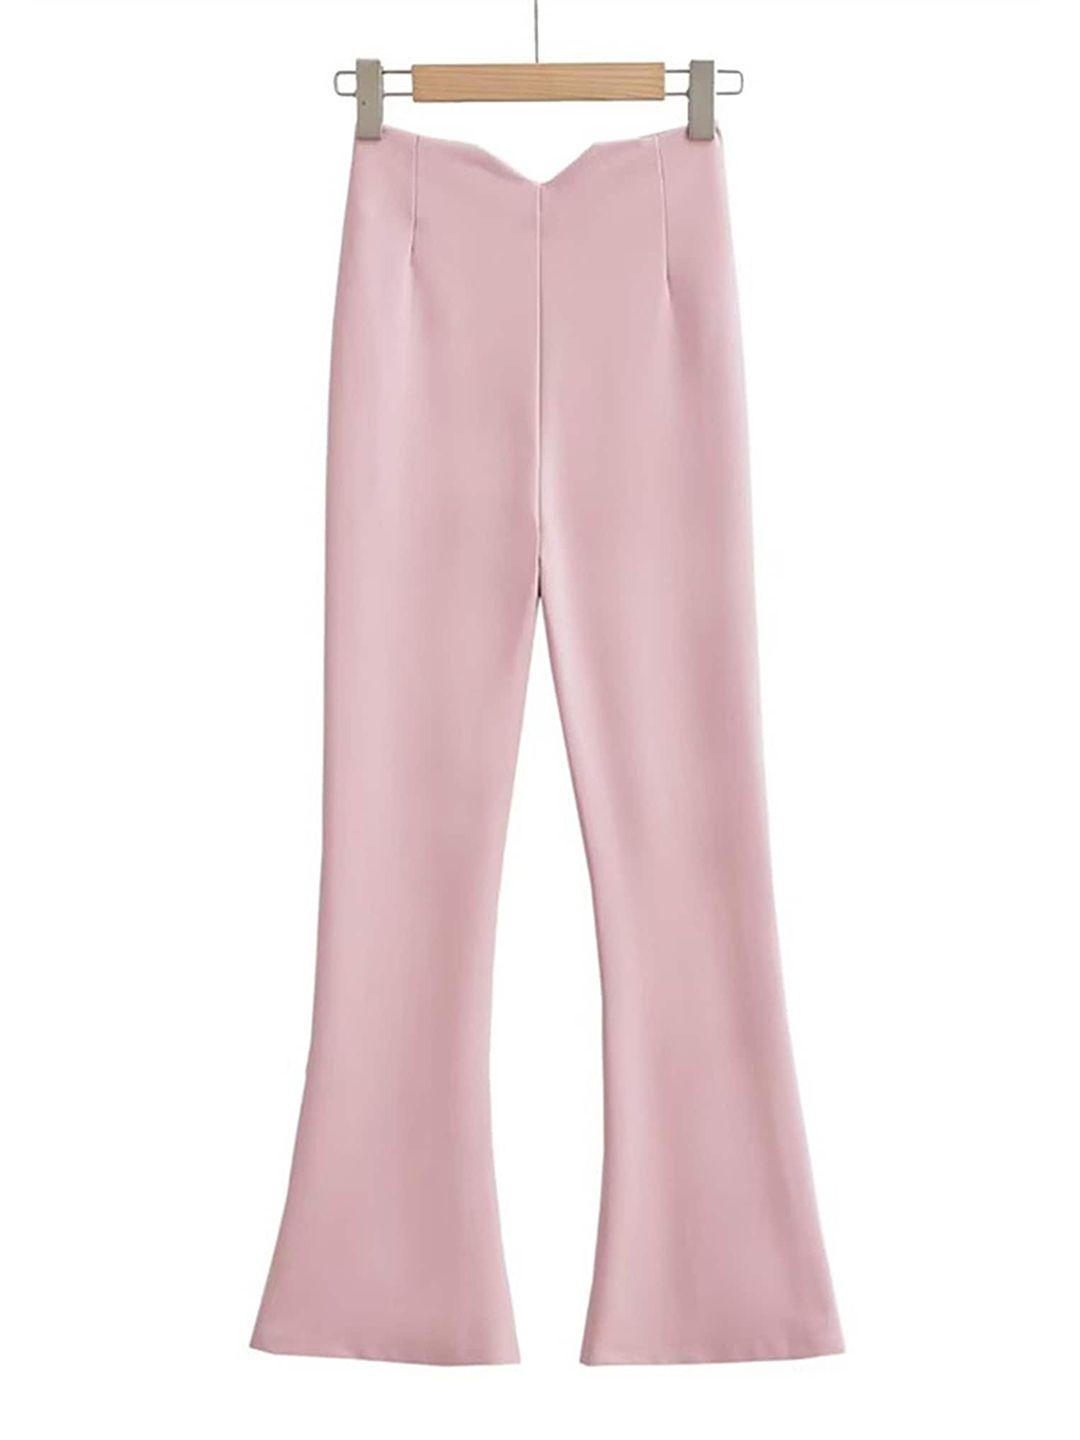 lulu & sky women pink flared trousers